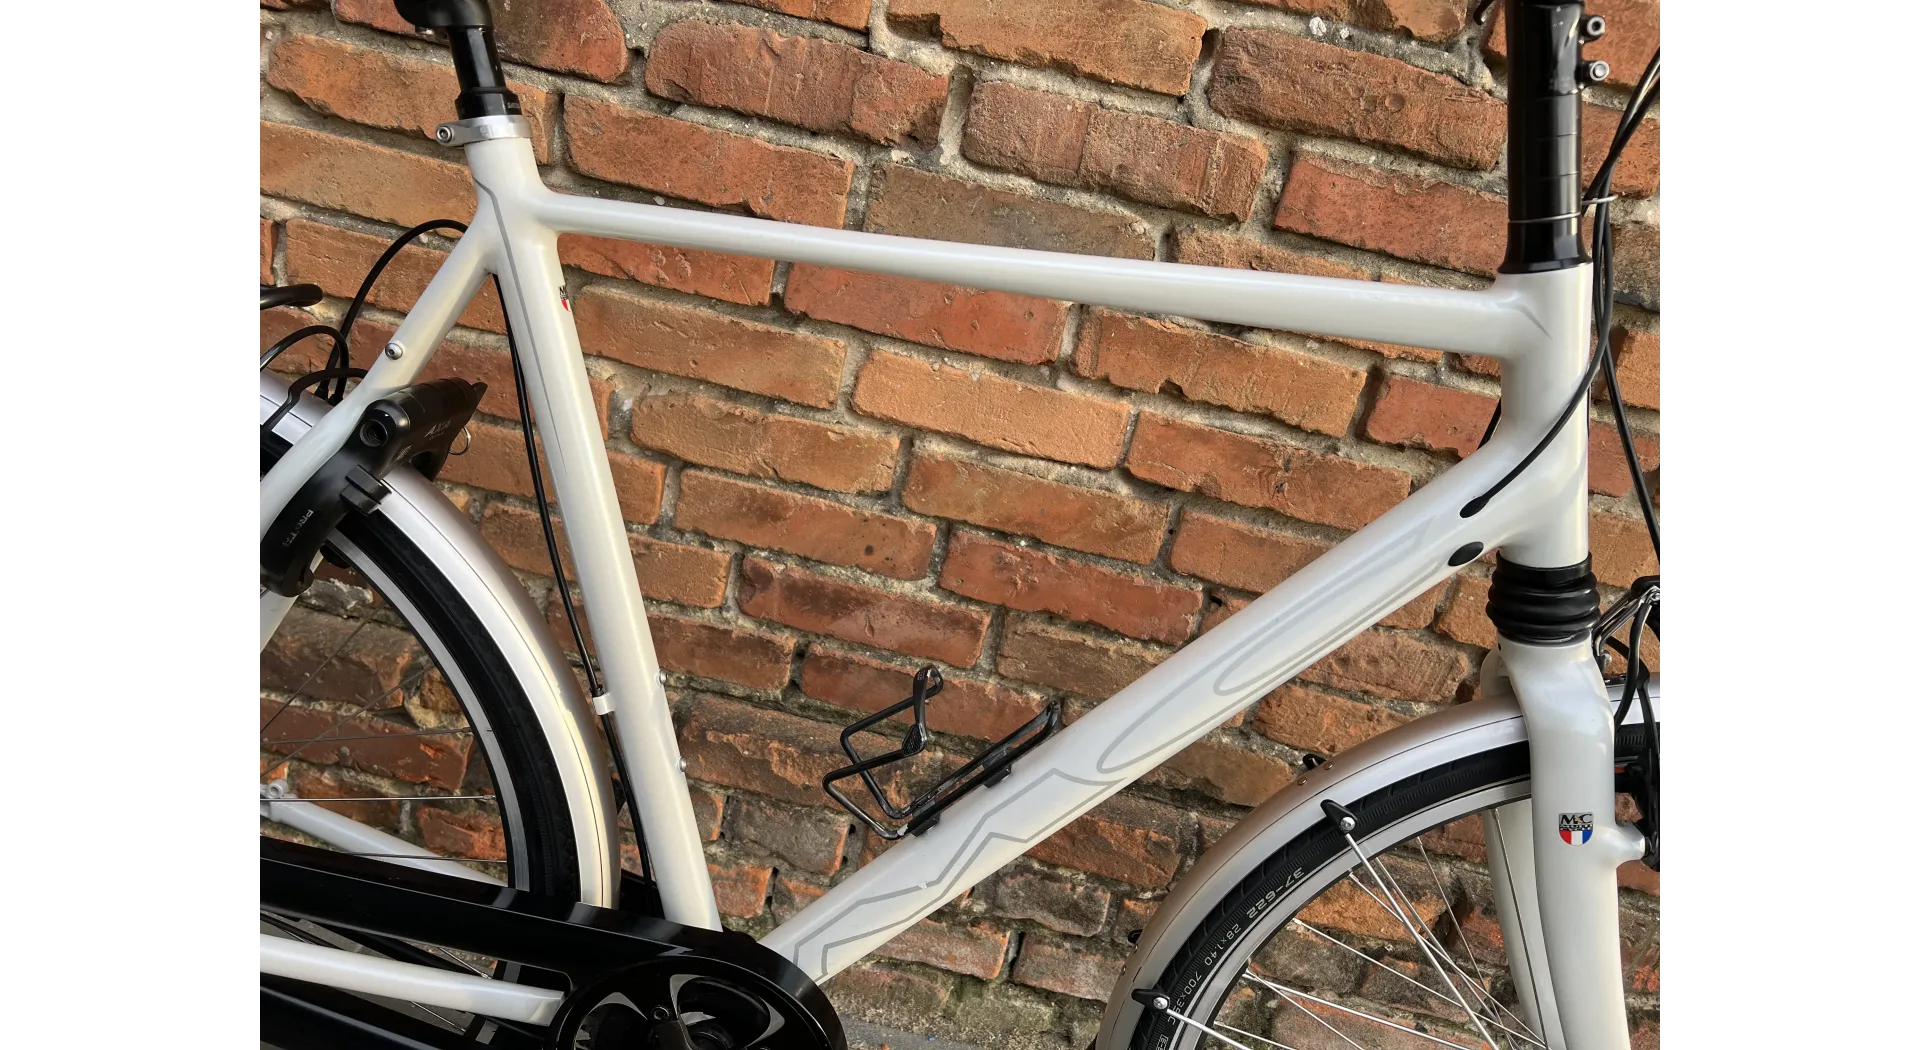 Multicycle Expressive 28'', Alfine 11 biegów, rower holenderski